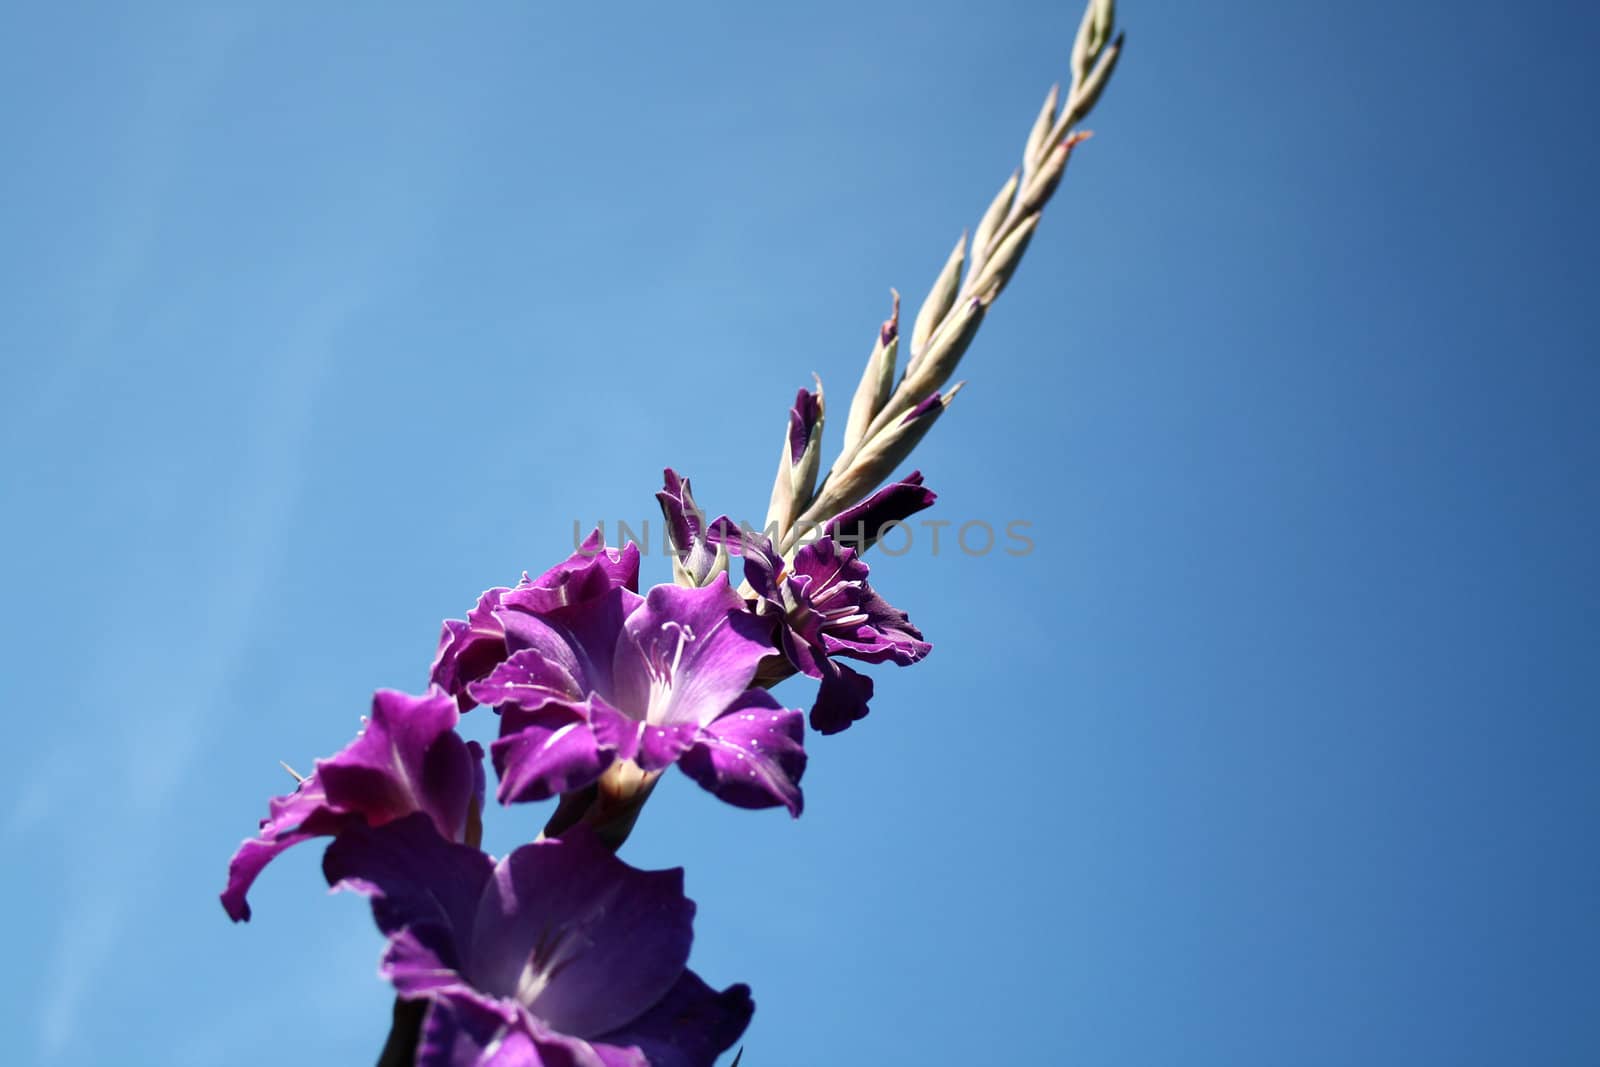 flower-gladioli by photochecker